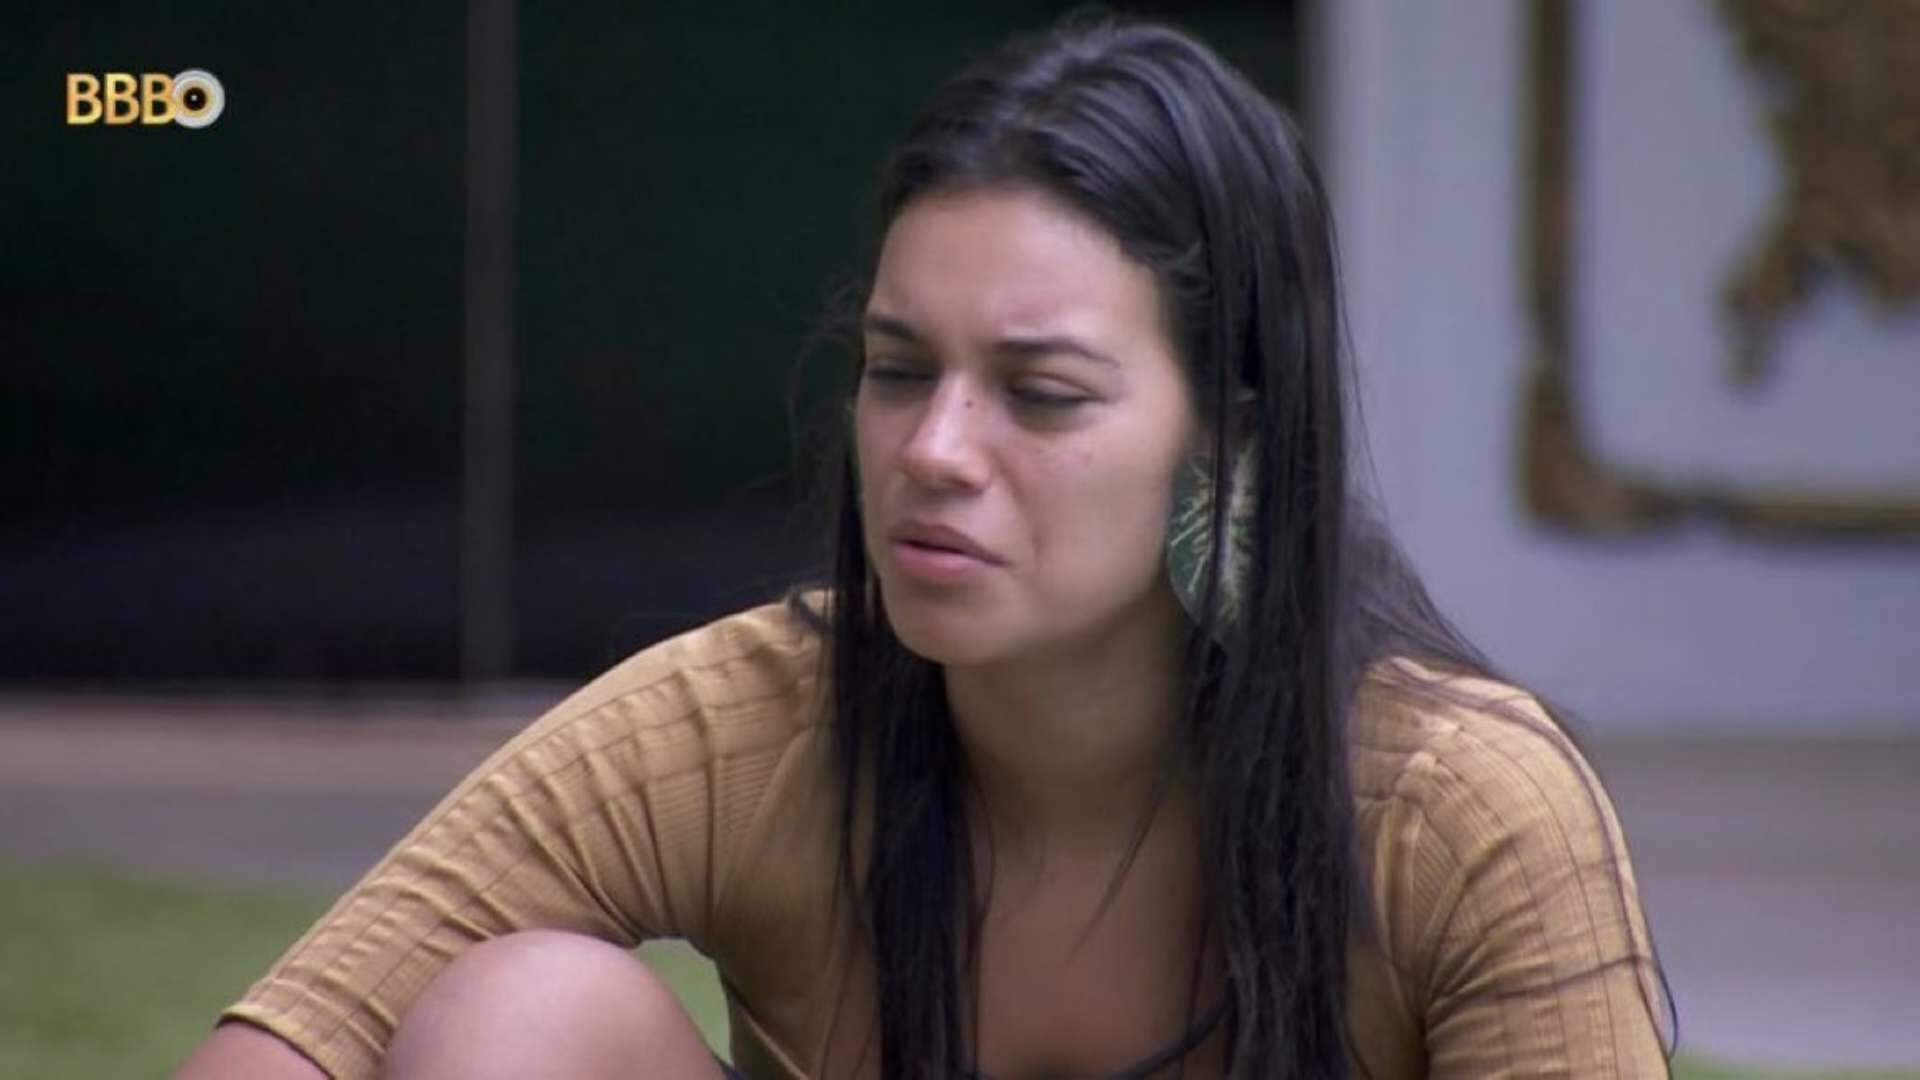 BBB 24: Após mudanças no comportamento de Fernanda, Alane expõe tudo o que pensa sobre a rival